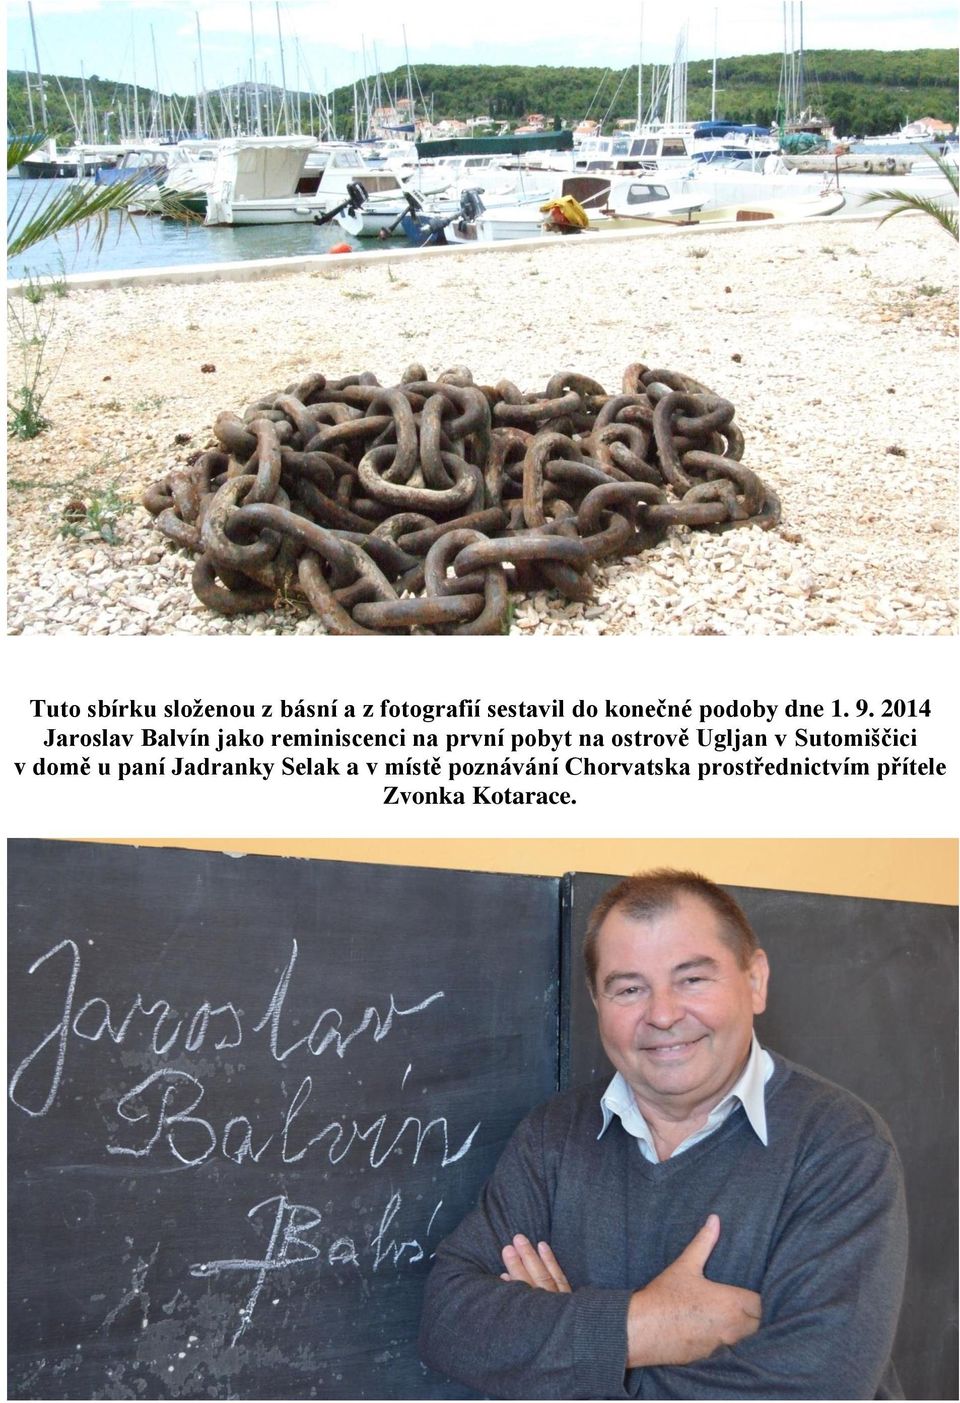 2014 Jaroslav Balvín jako reminiscenci na první pobyt na ostrově